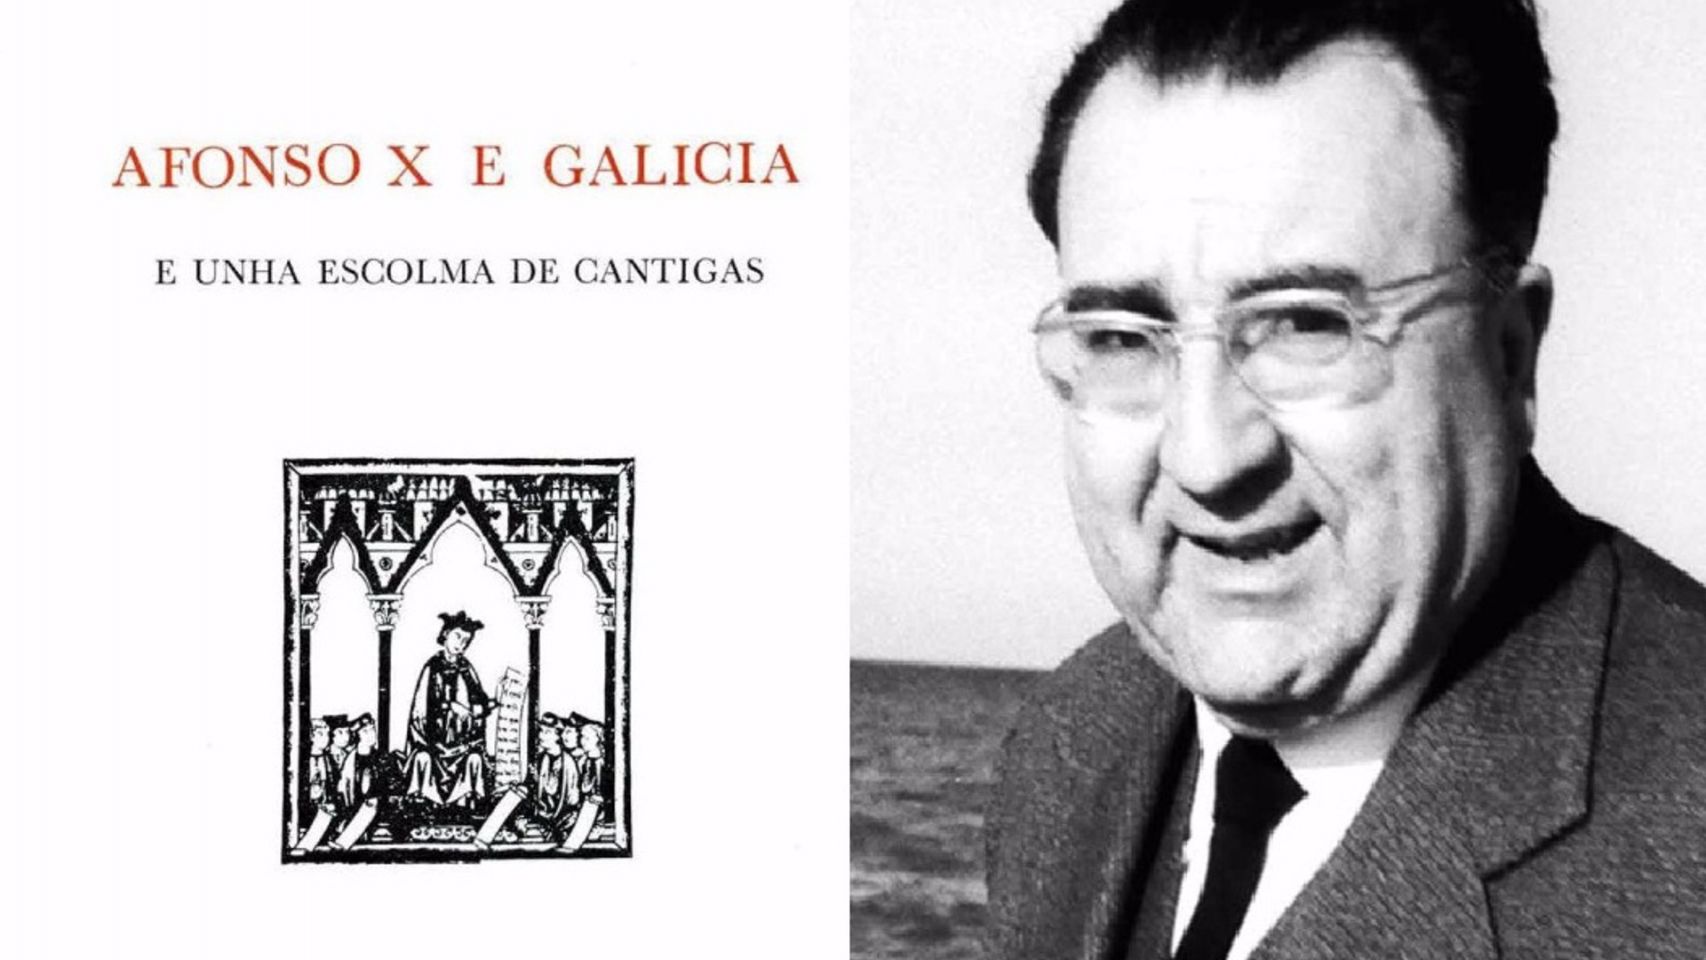 Afonso X e Galicia: e unha escolma de cantigas, edición de Xosé Filgueira Valverde